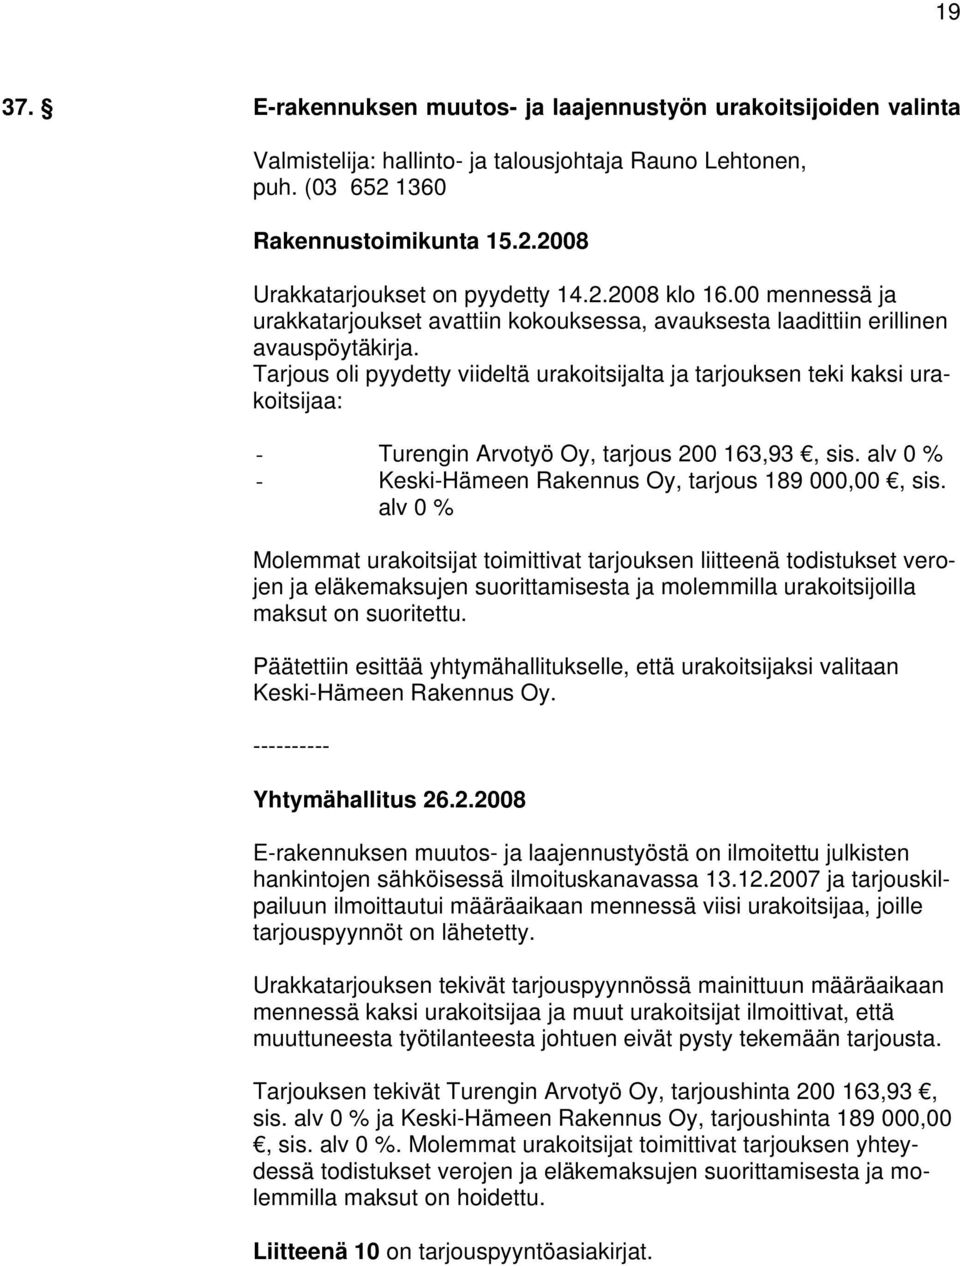 Tarjous oli pyydetty viideltä urakoitsijalta ja tarjouksen teki kaksi urakoitsijaa: - Turengin Arvotyö Oy, tarjous 200 163,93, sis. alv 0 % - Keski-Hämeen Rakennus Oy, tarjous 189 000,00, sis.